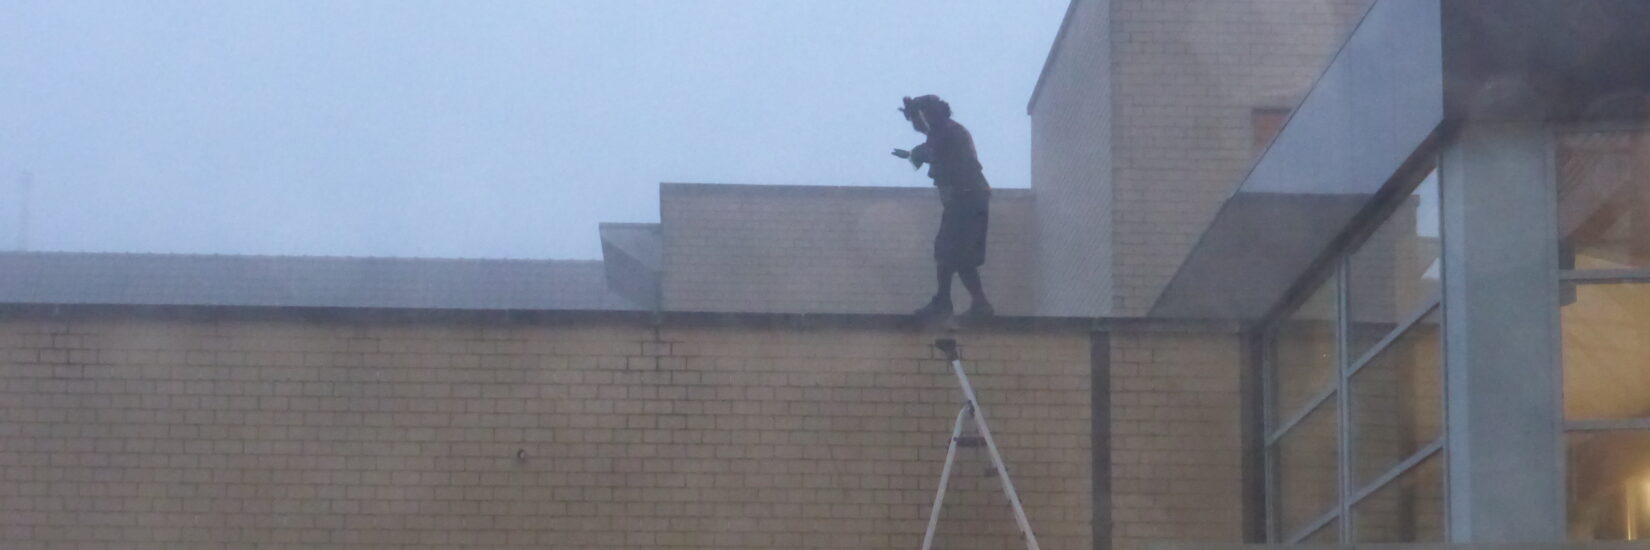 Piet op het dak.